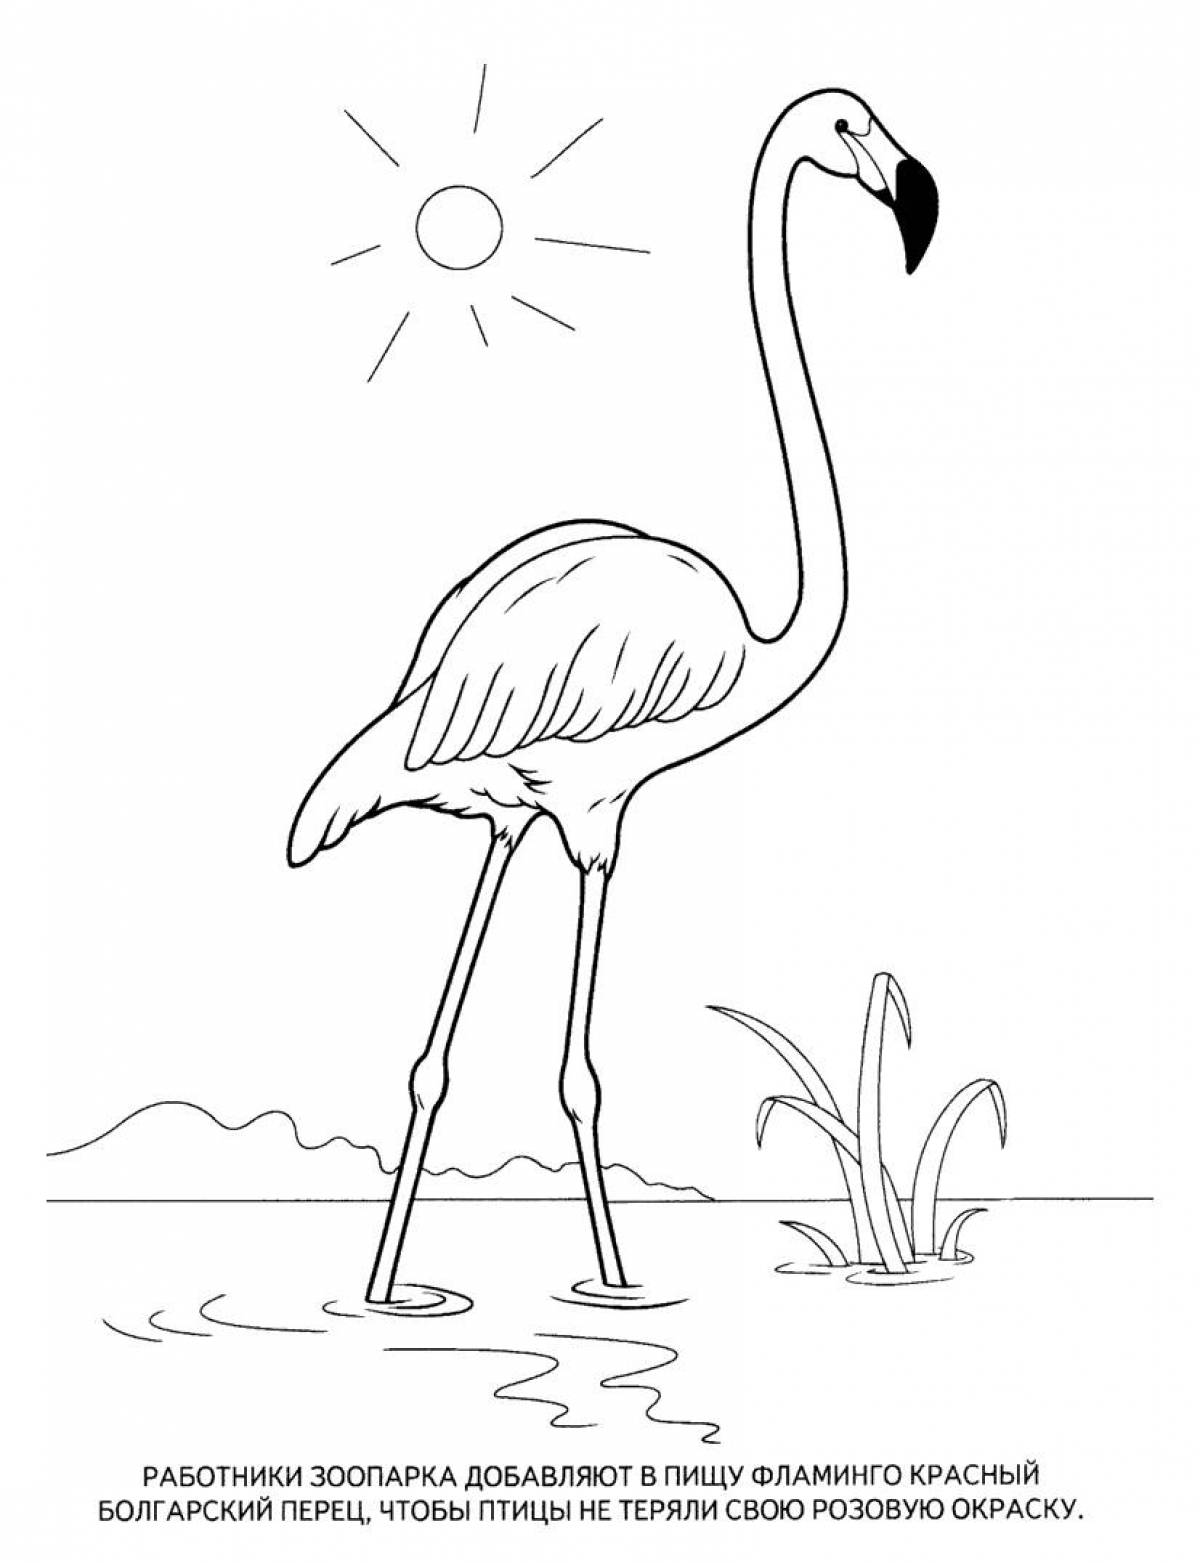 Sun and flamingos